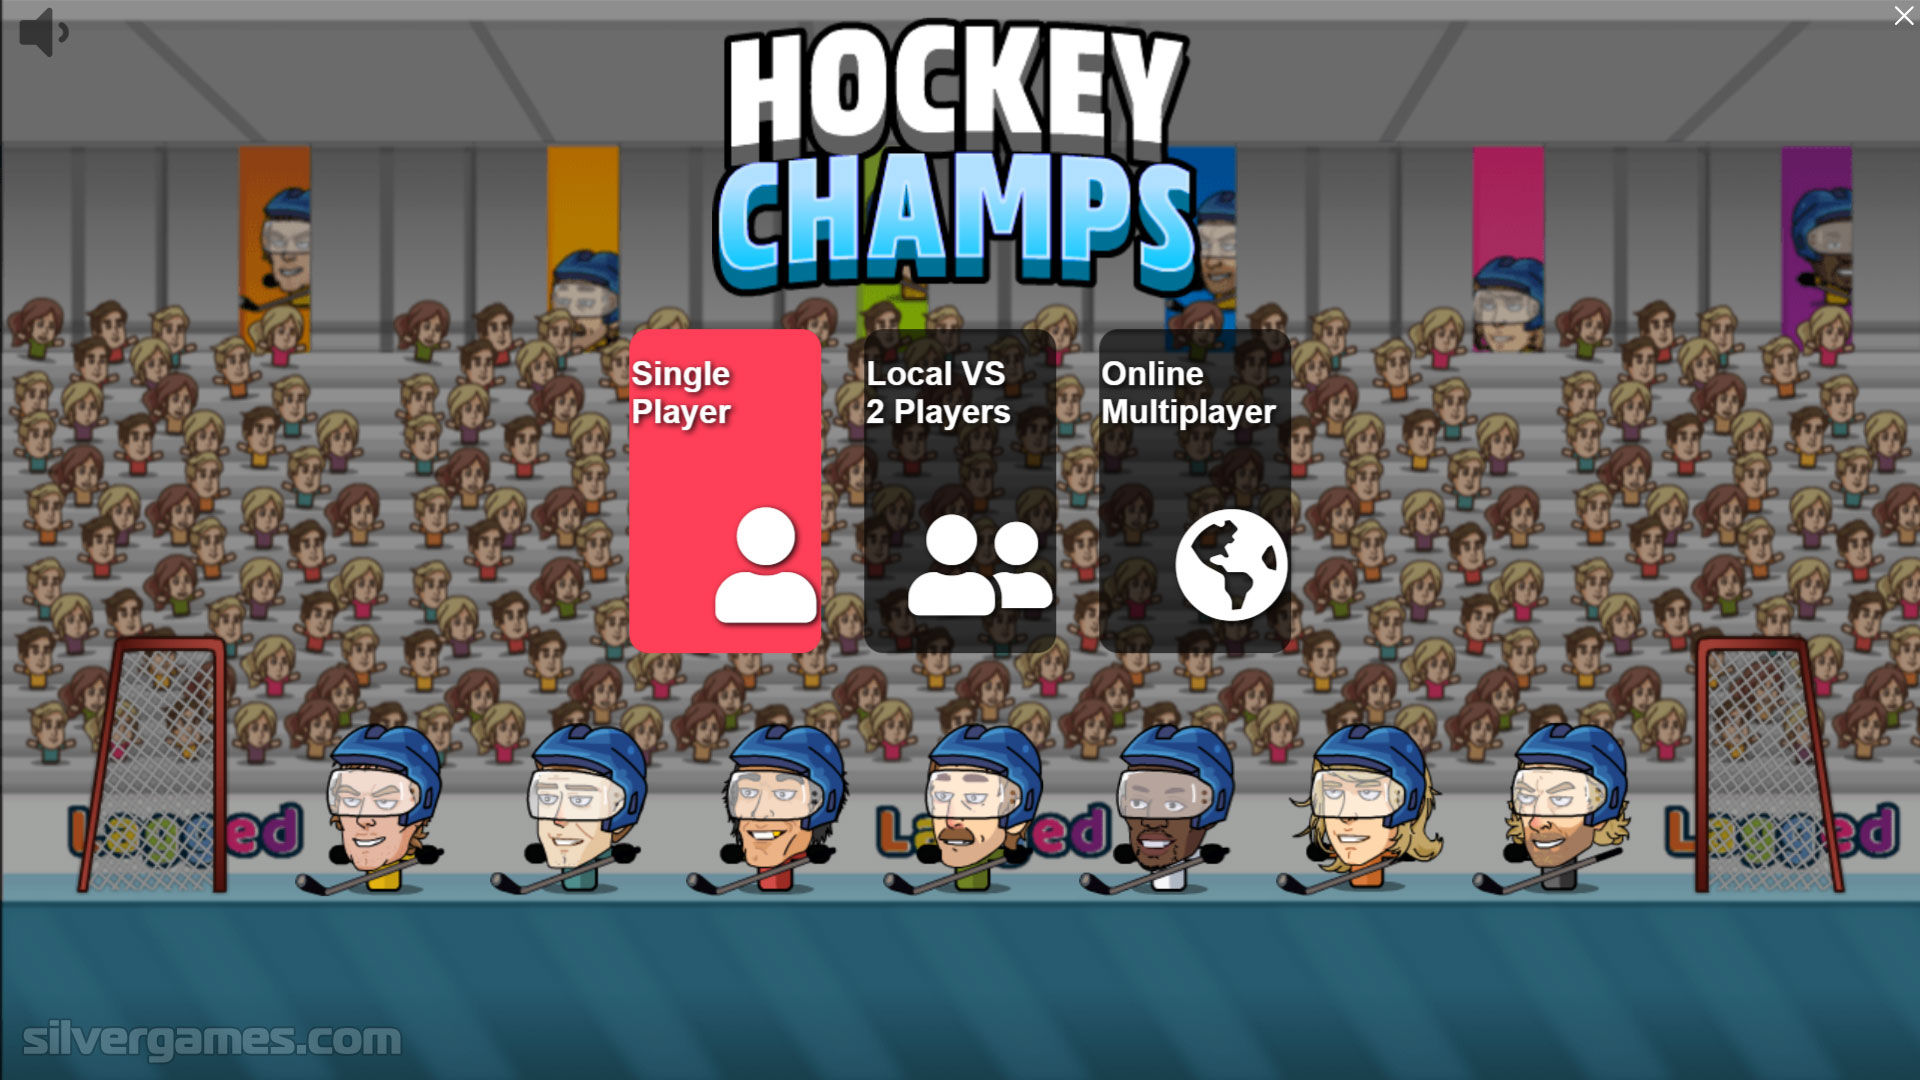 Hockey Champs